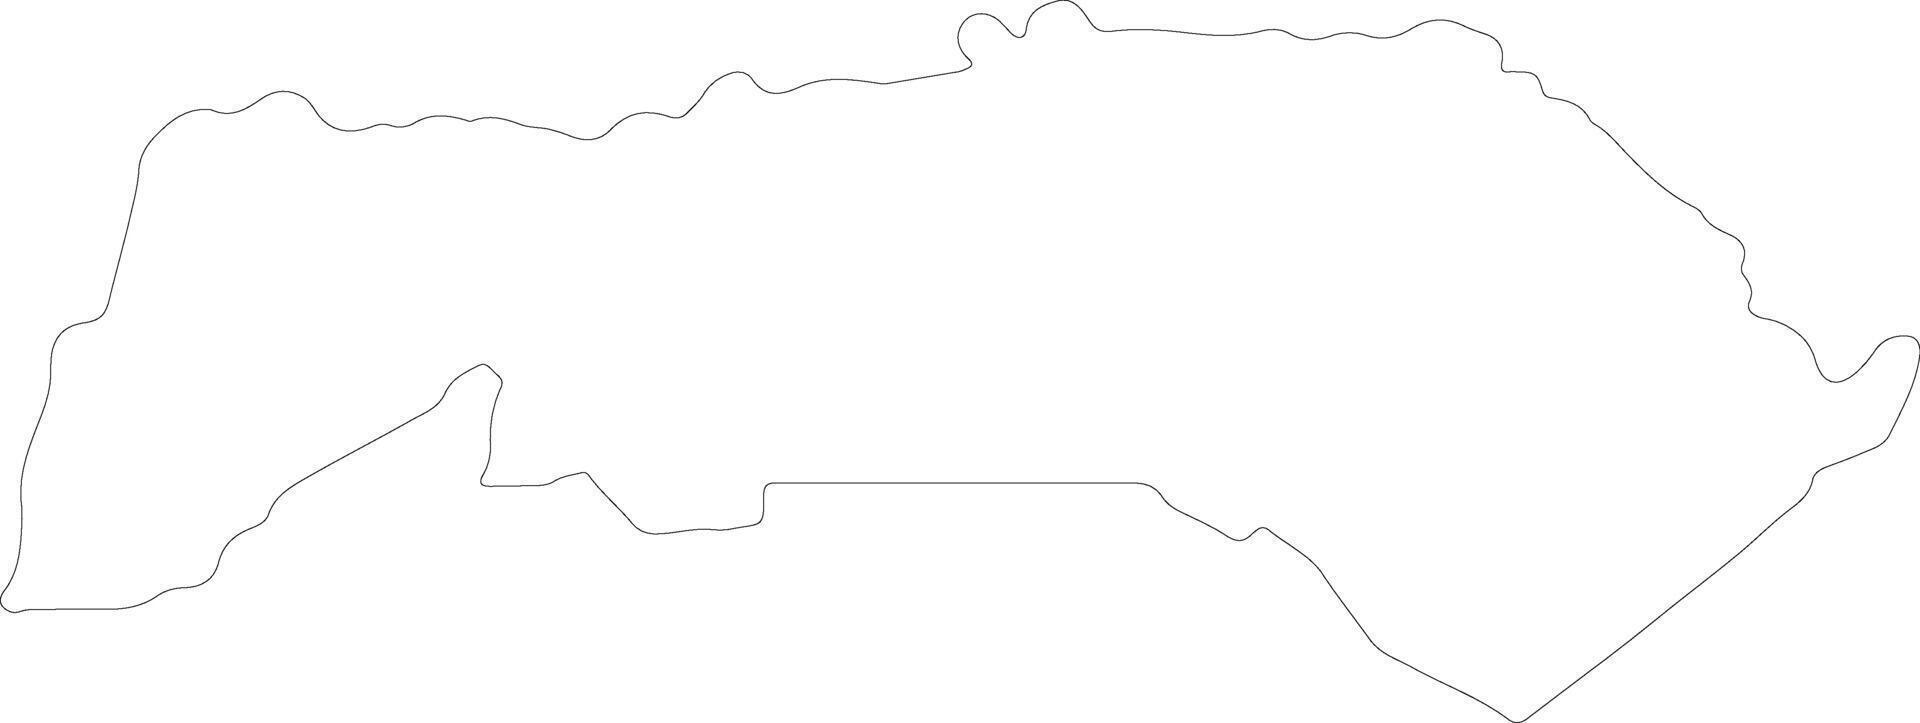 Saint-Louis Senegal outline map vector